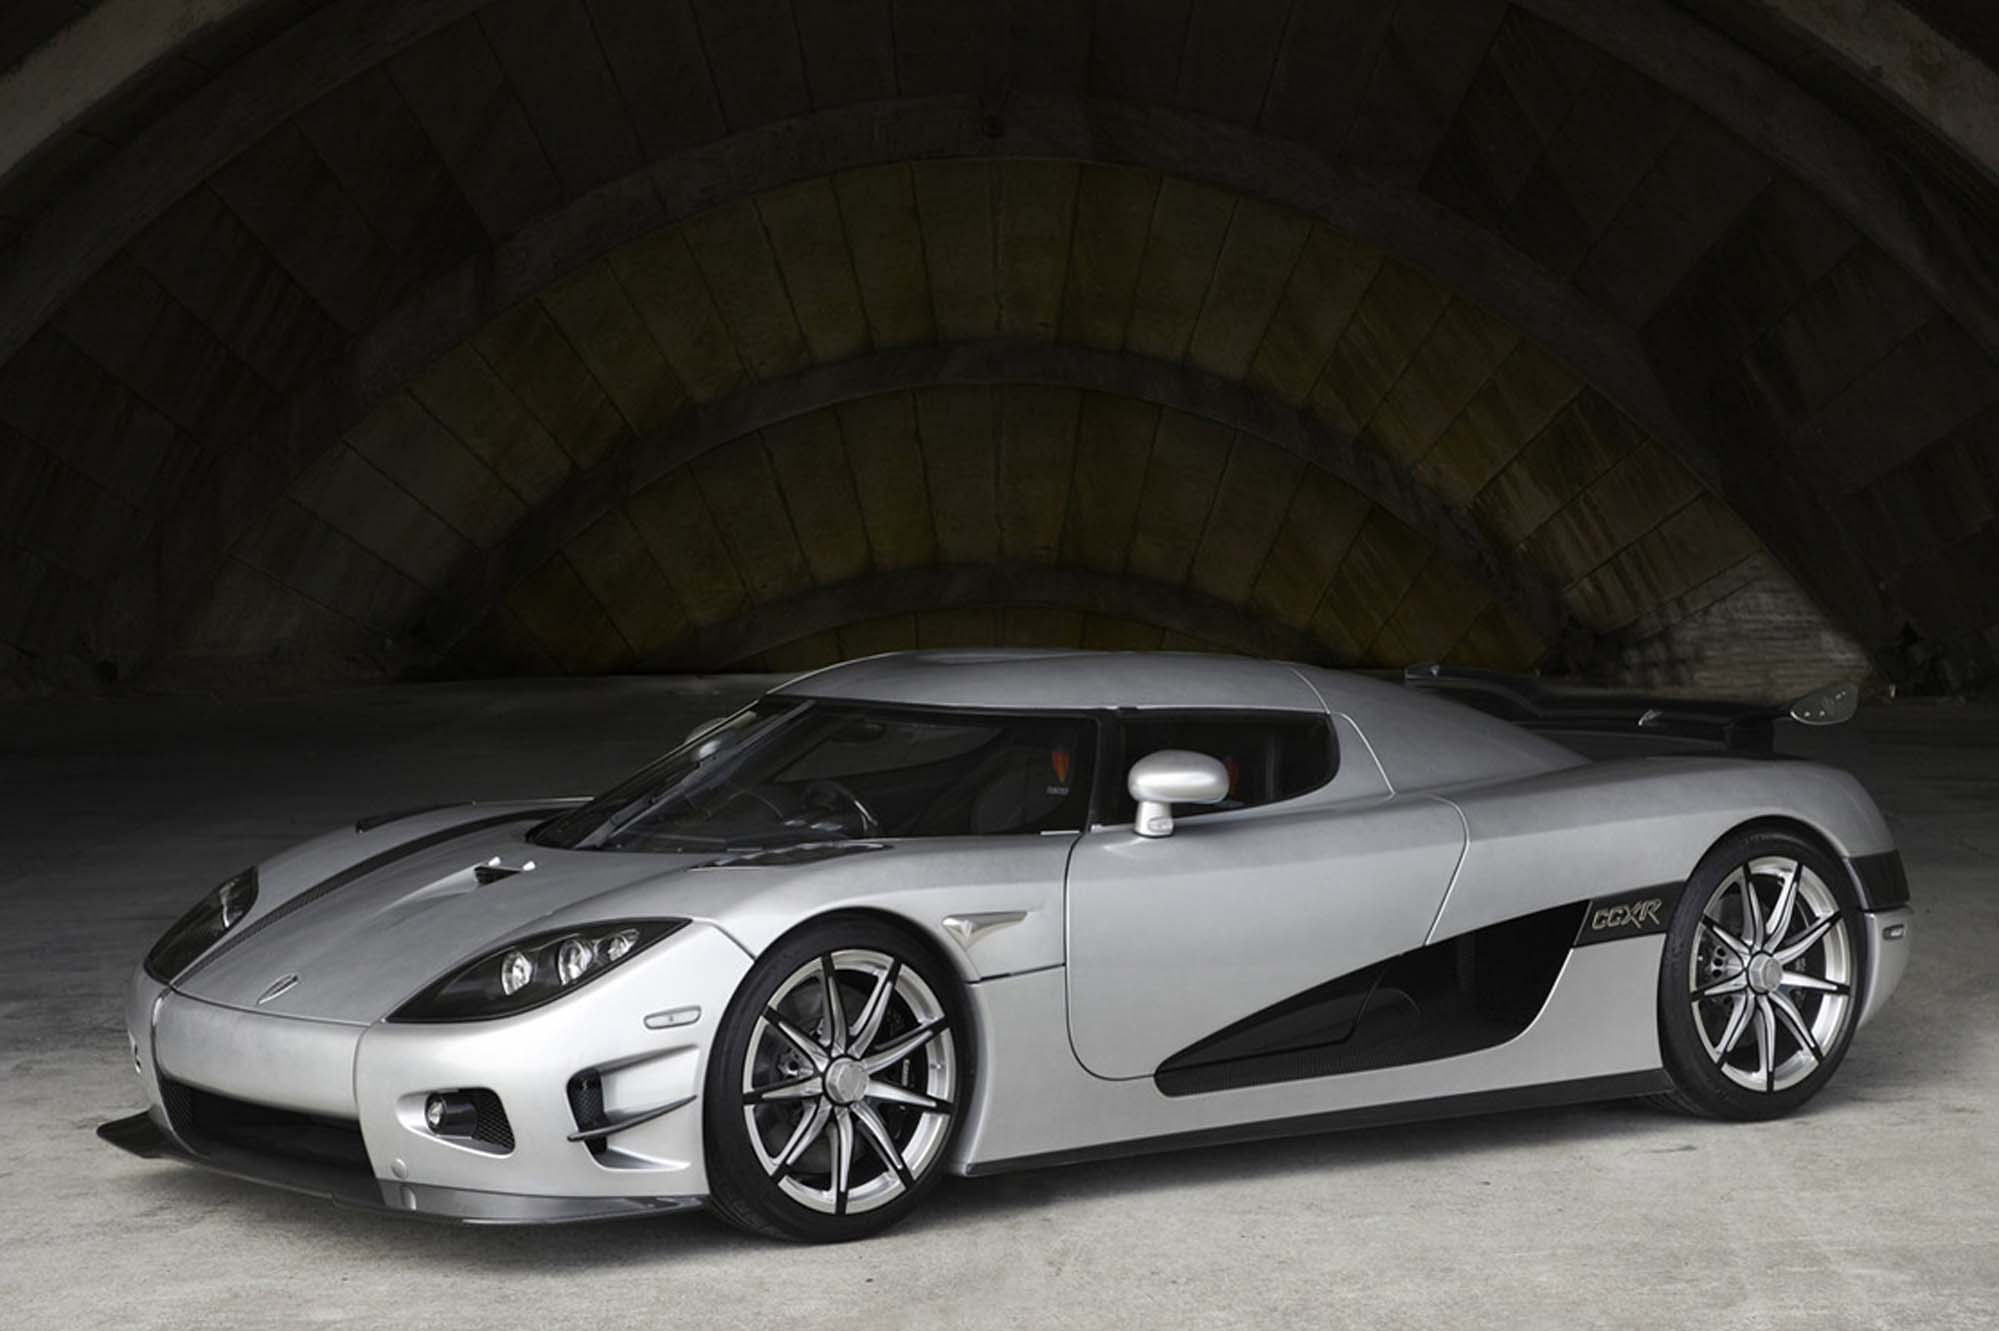 Image principale de l'actu: Koenigsegg trevita la voiture la plus chere du monde 